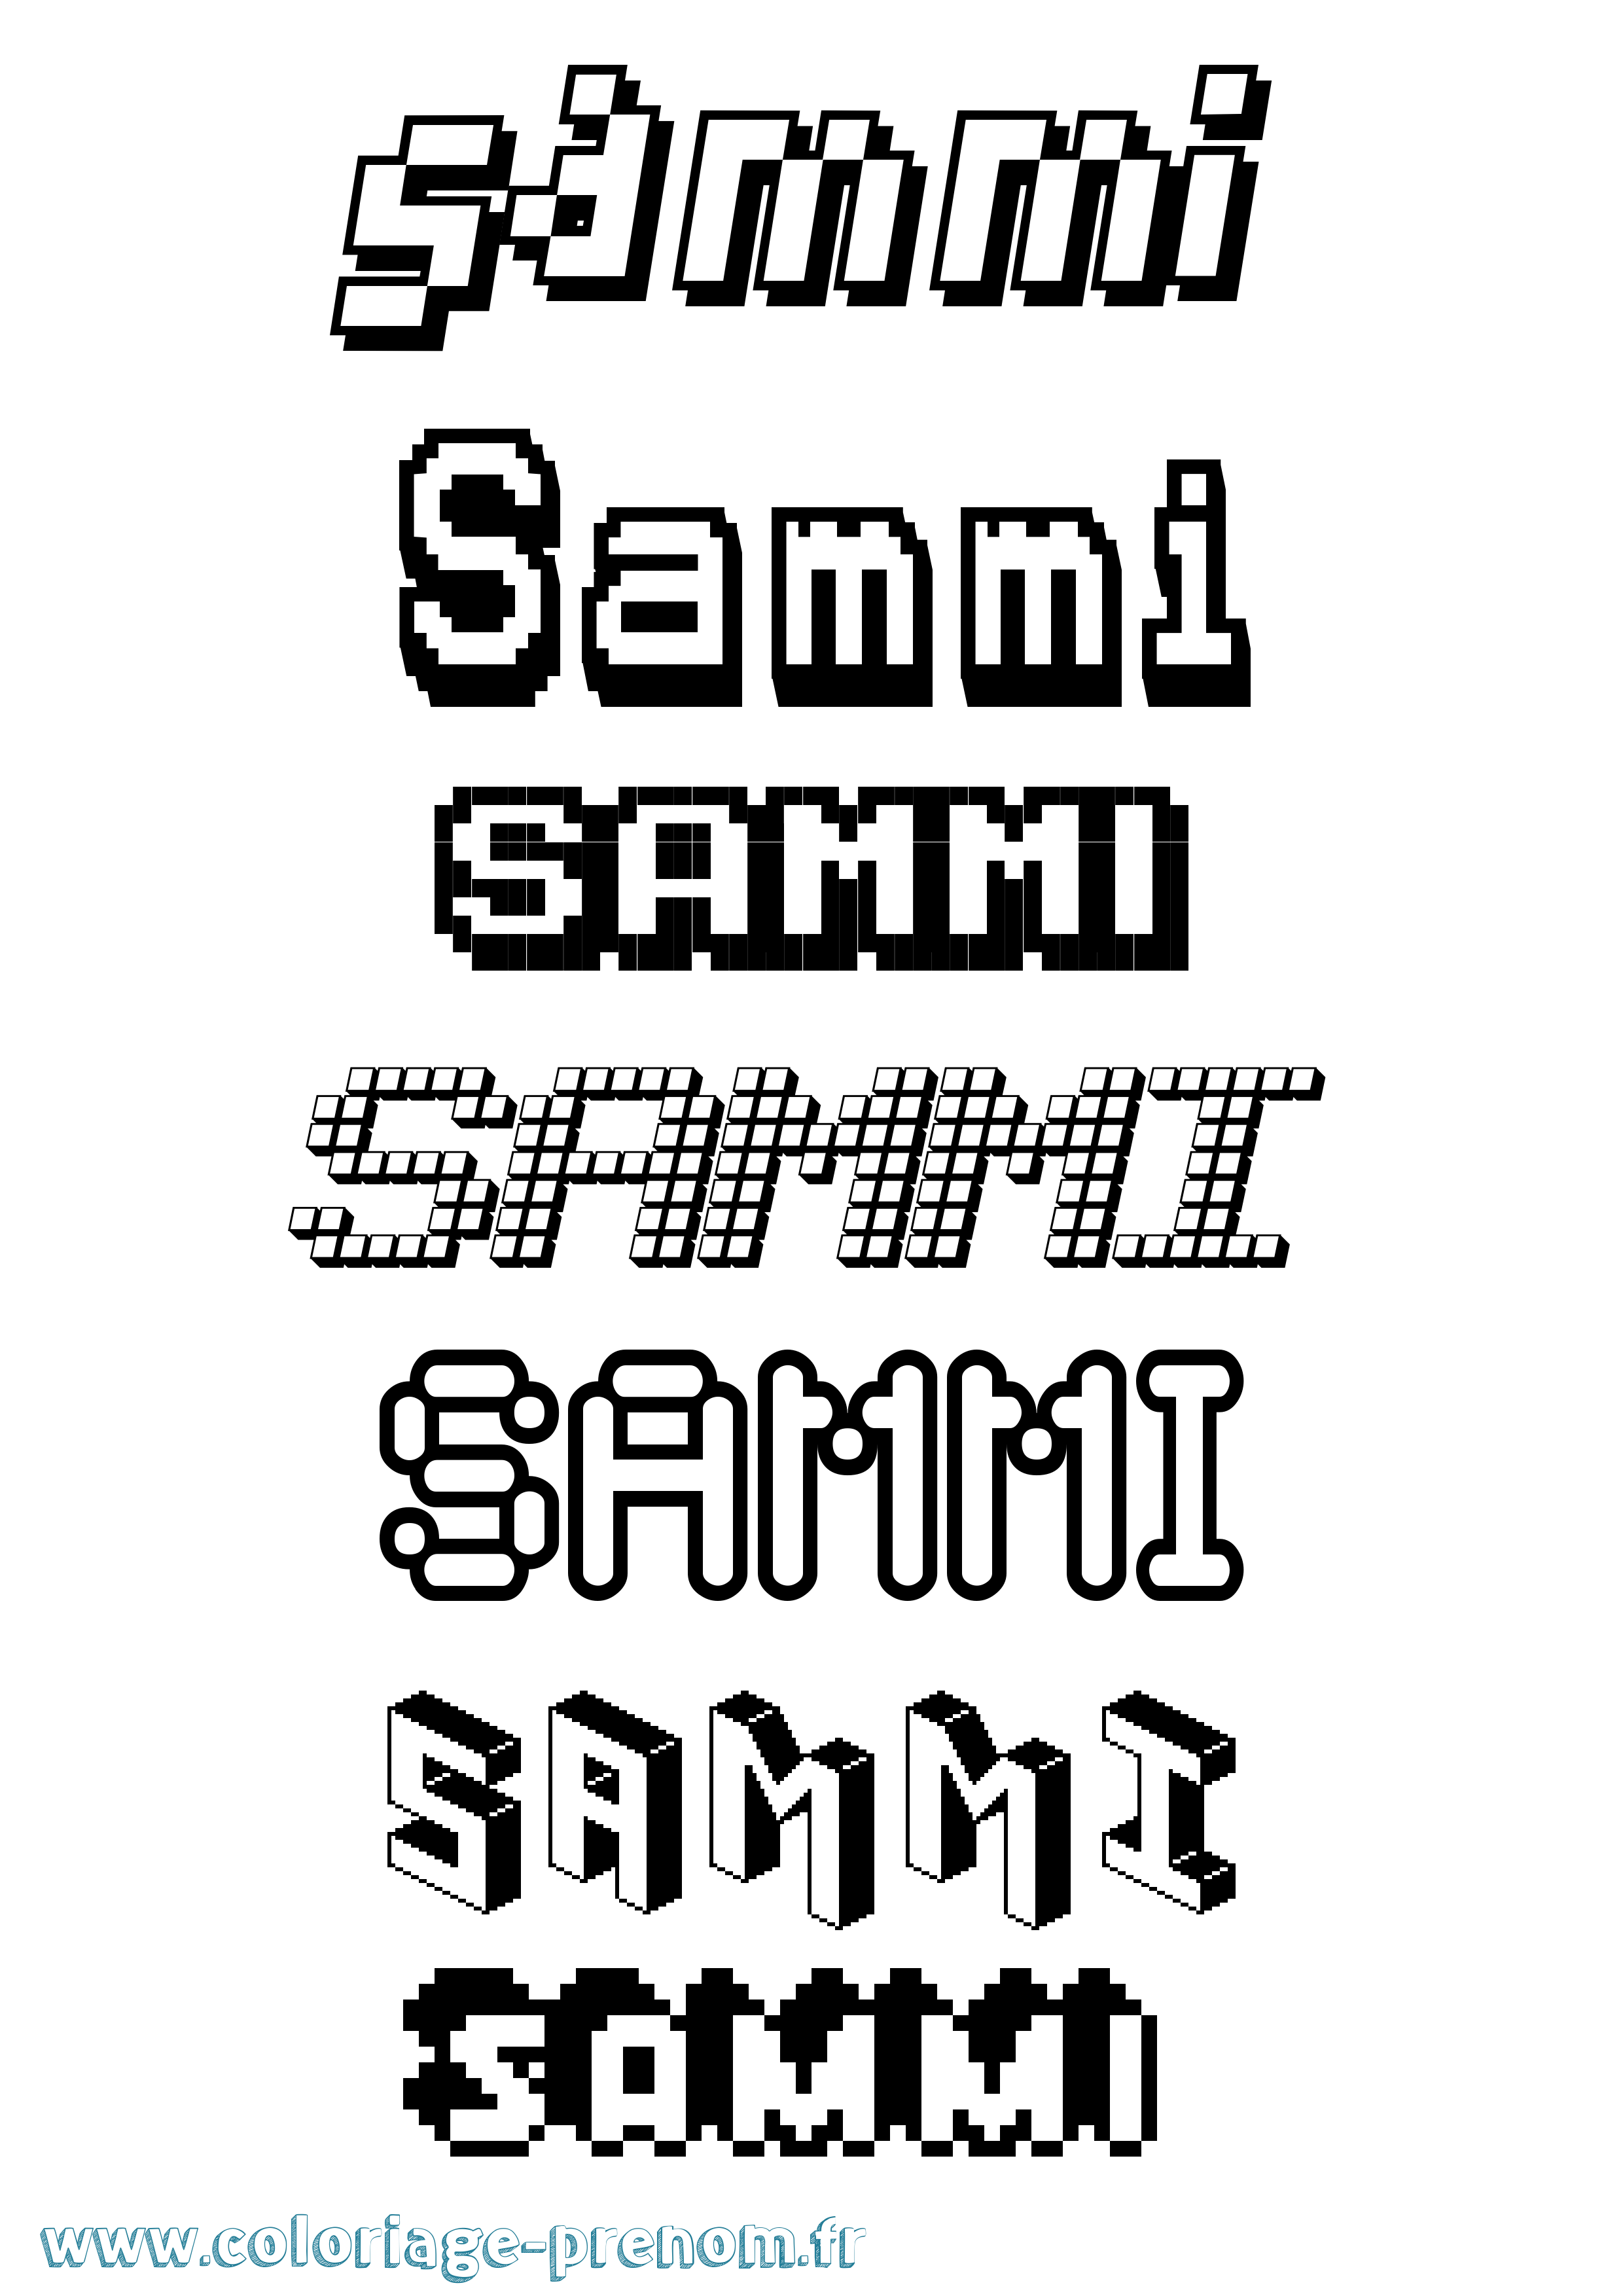 Coloriage prénom Sammi Pixel